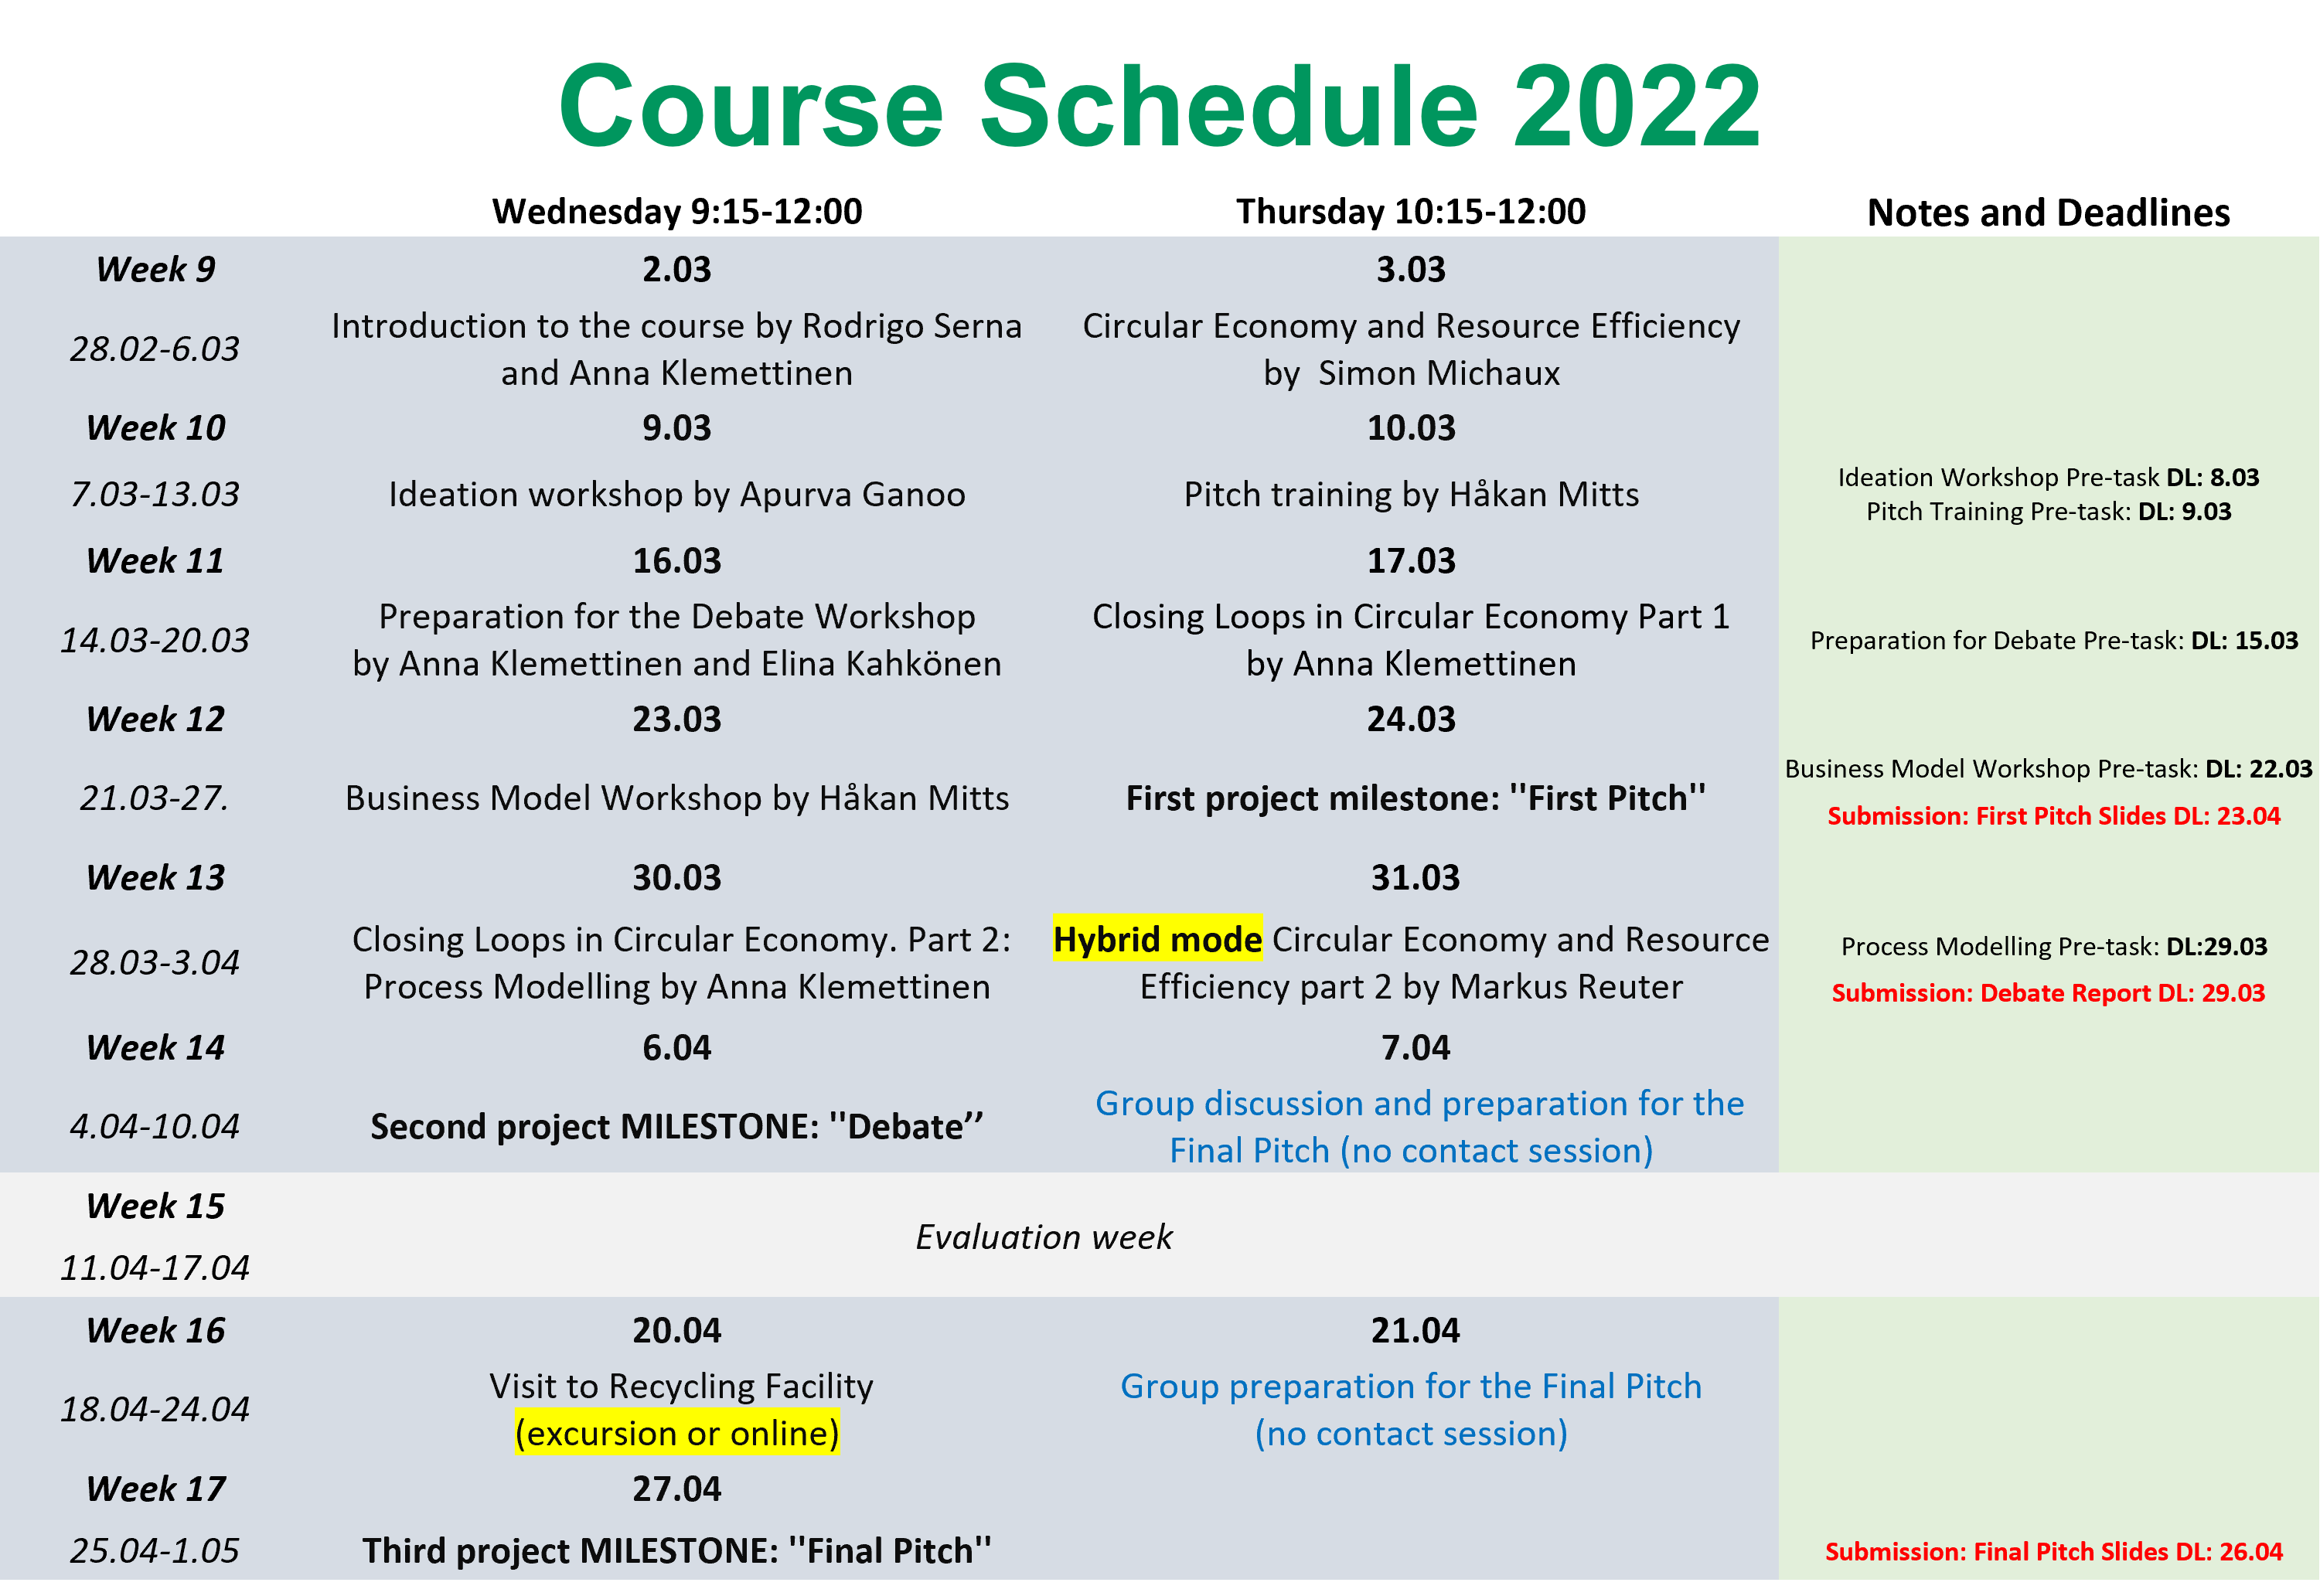 Schedule 2022